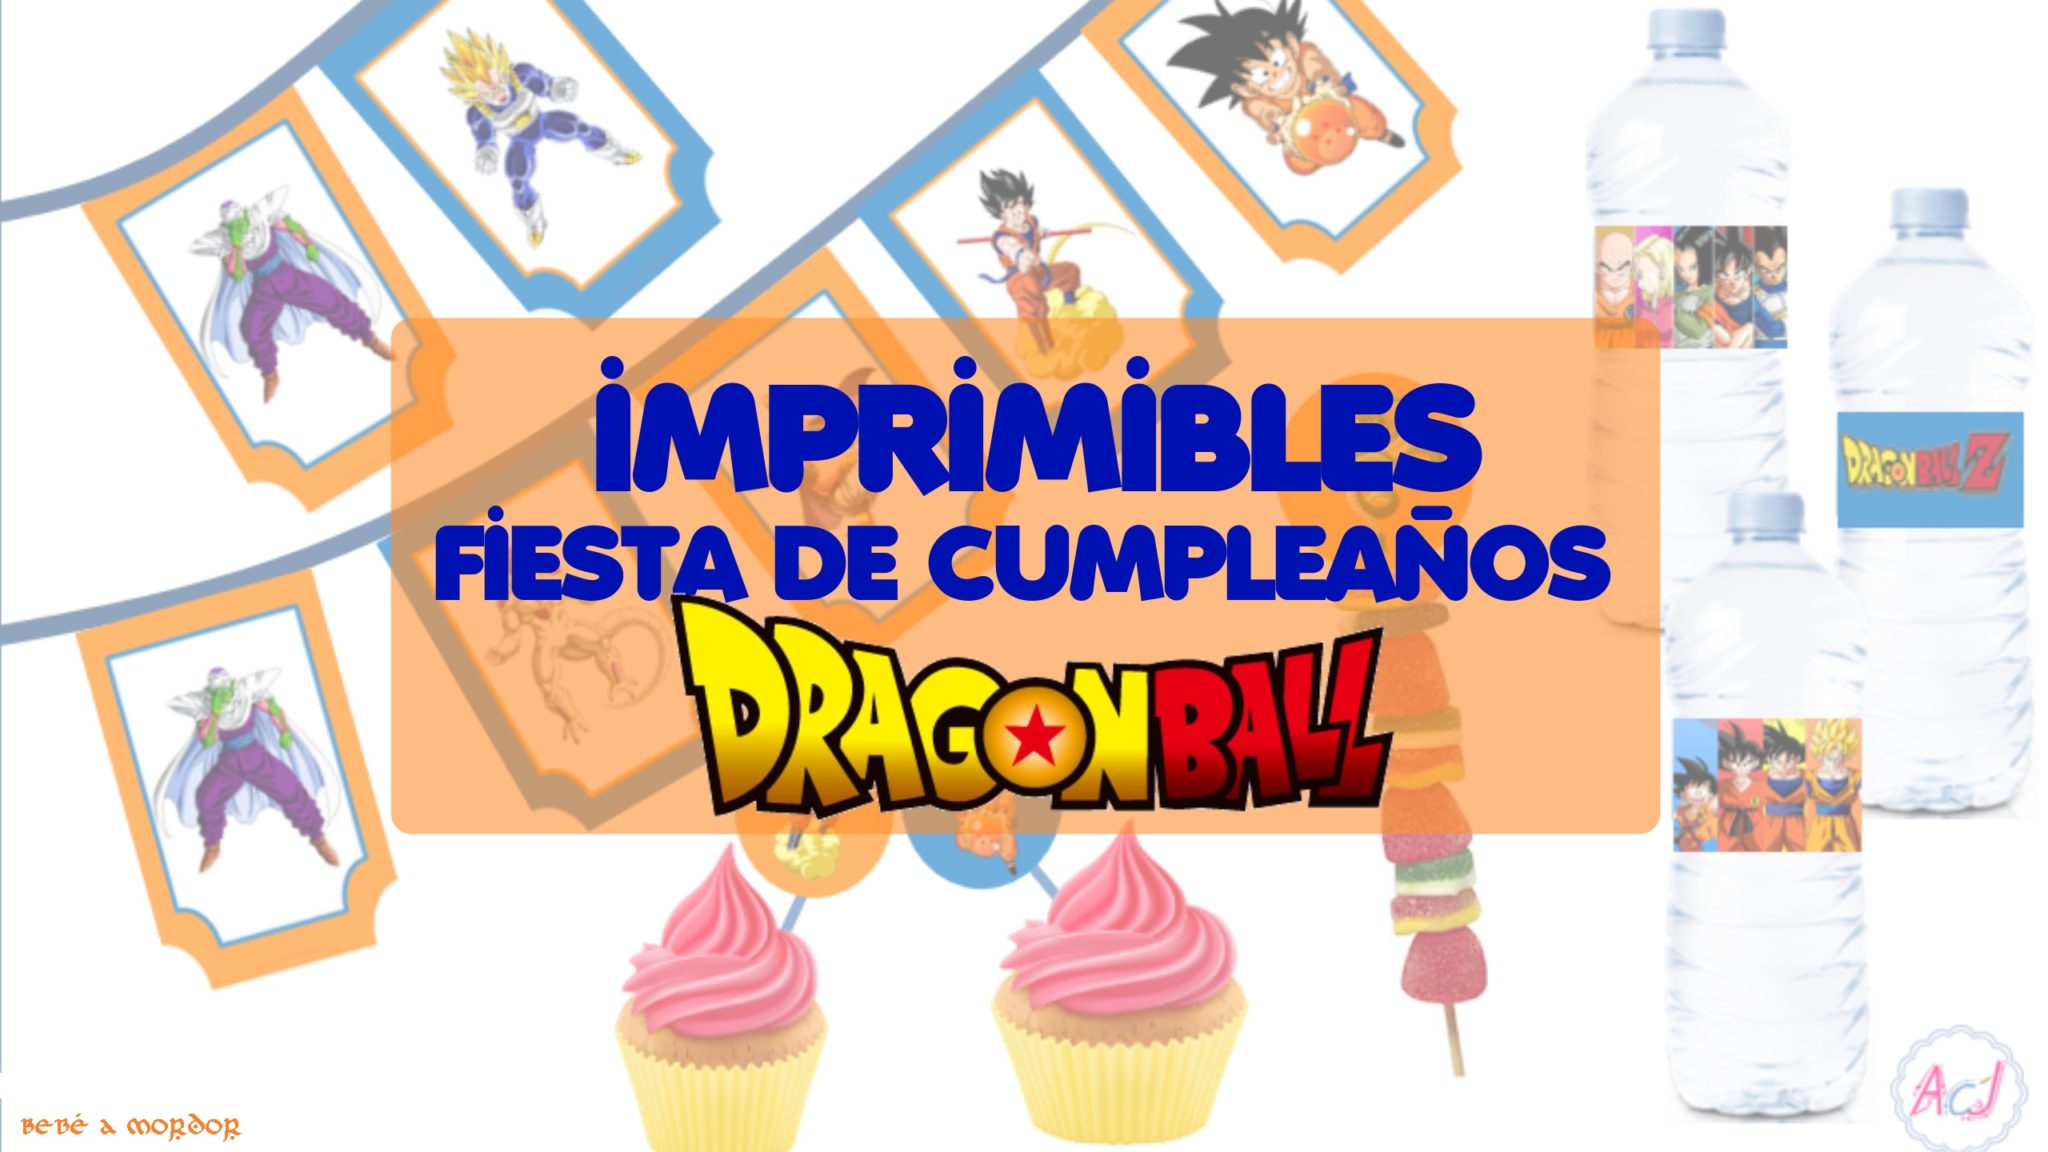 Fiesta de cumpleaños Dragon Ball (¡con imprimibles!) - Bebé a Mordor